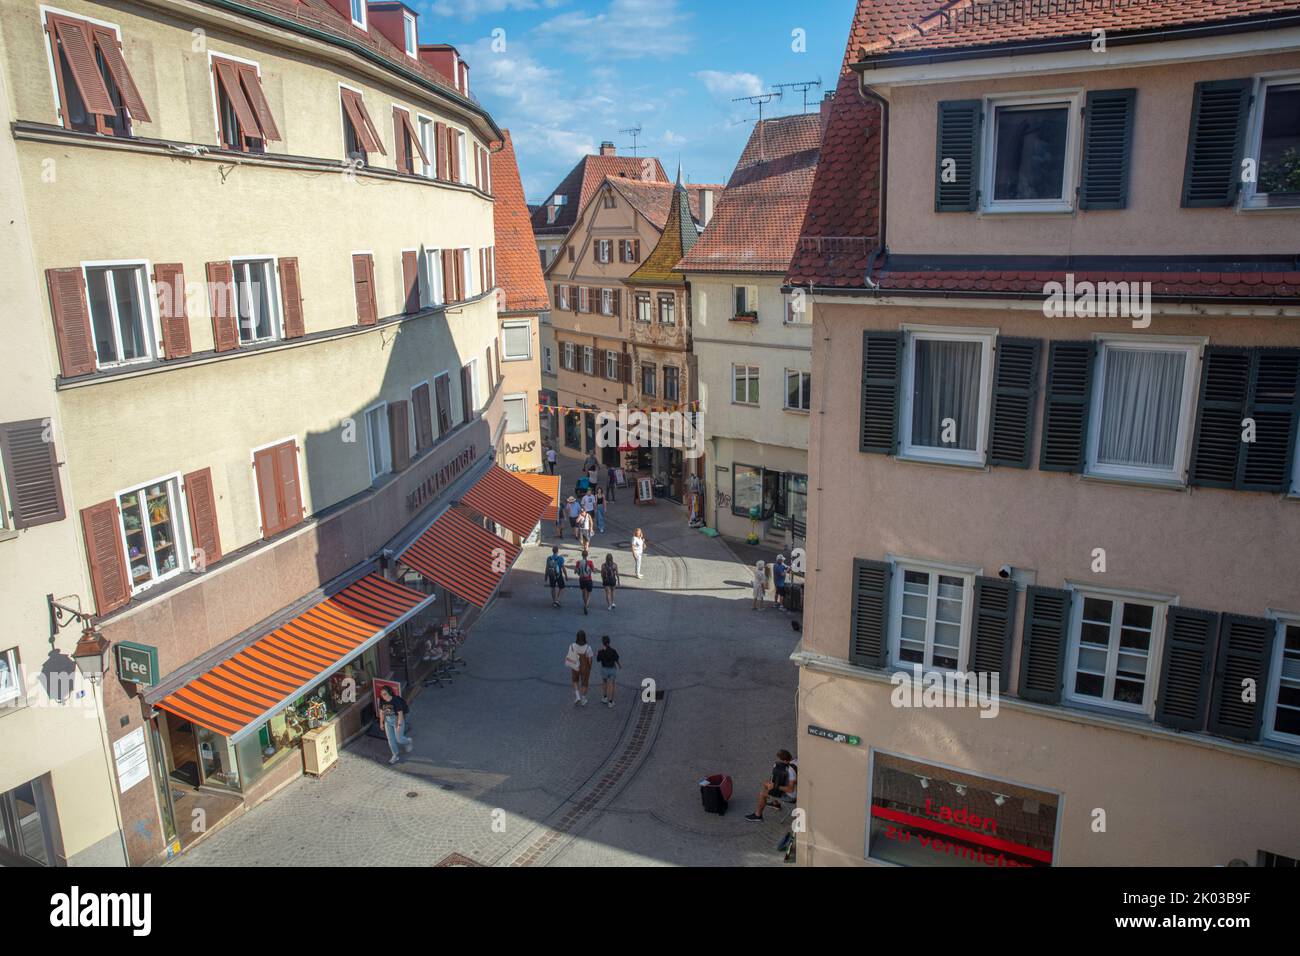 Allemagne, Bade-Wurtemberg, Tübingen, vieille ville, zone piétonne, ancien magasin de tabac Banque D'Images